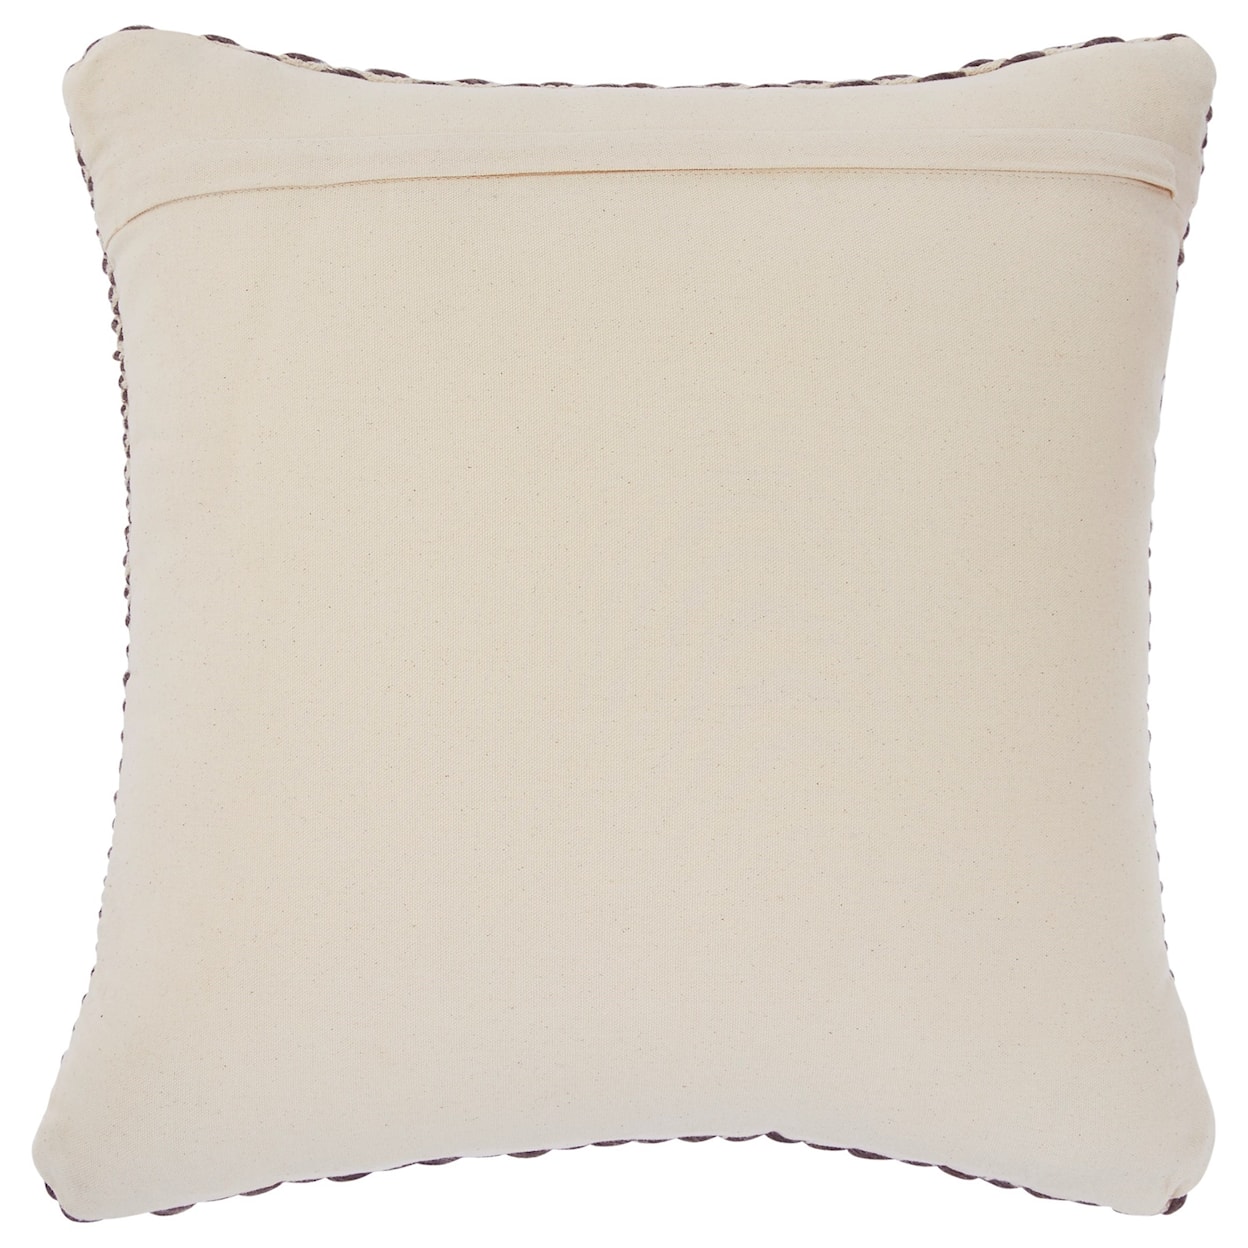 Signature Design Pillows Bertin Gray/Natural Pillow